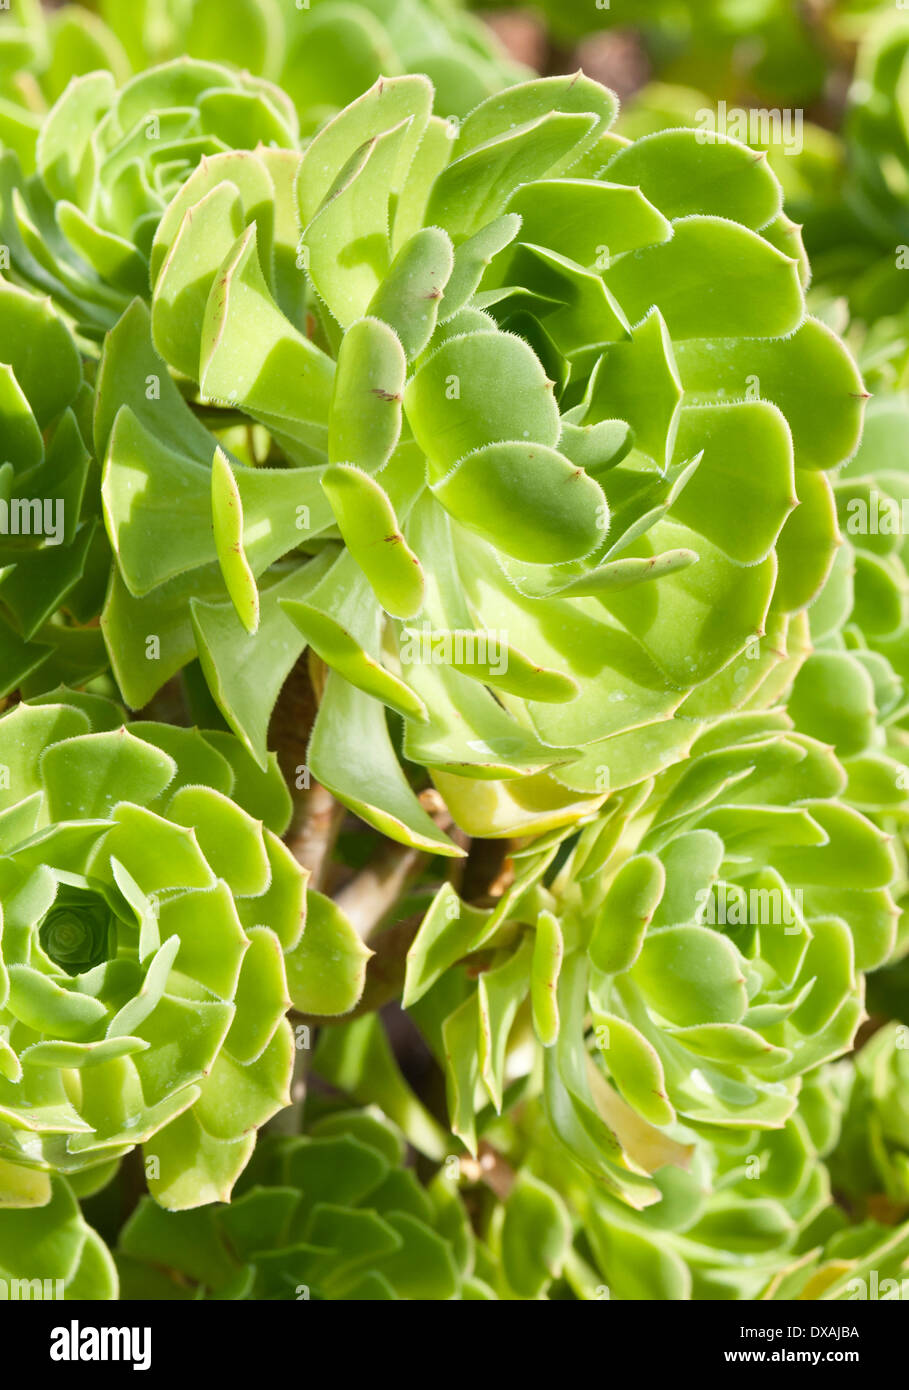 Aeonium, Tree aeonium, Aeonium arboreum, close up showing pattern. Stock Photo